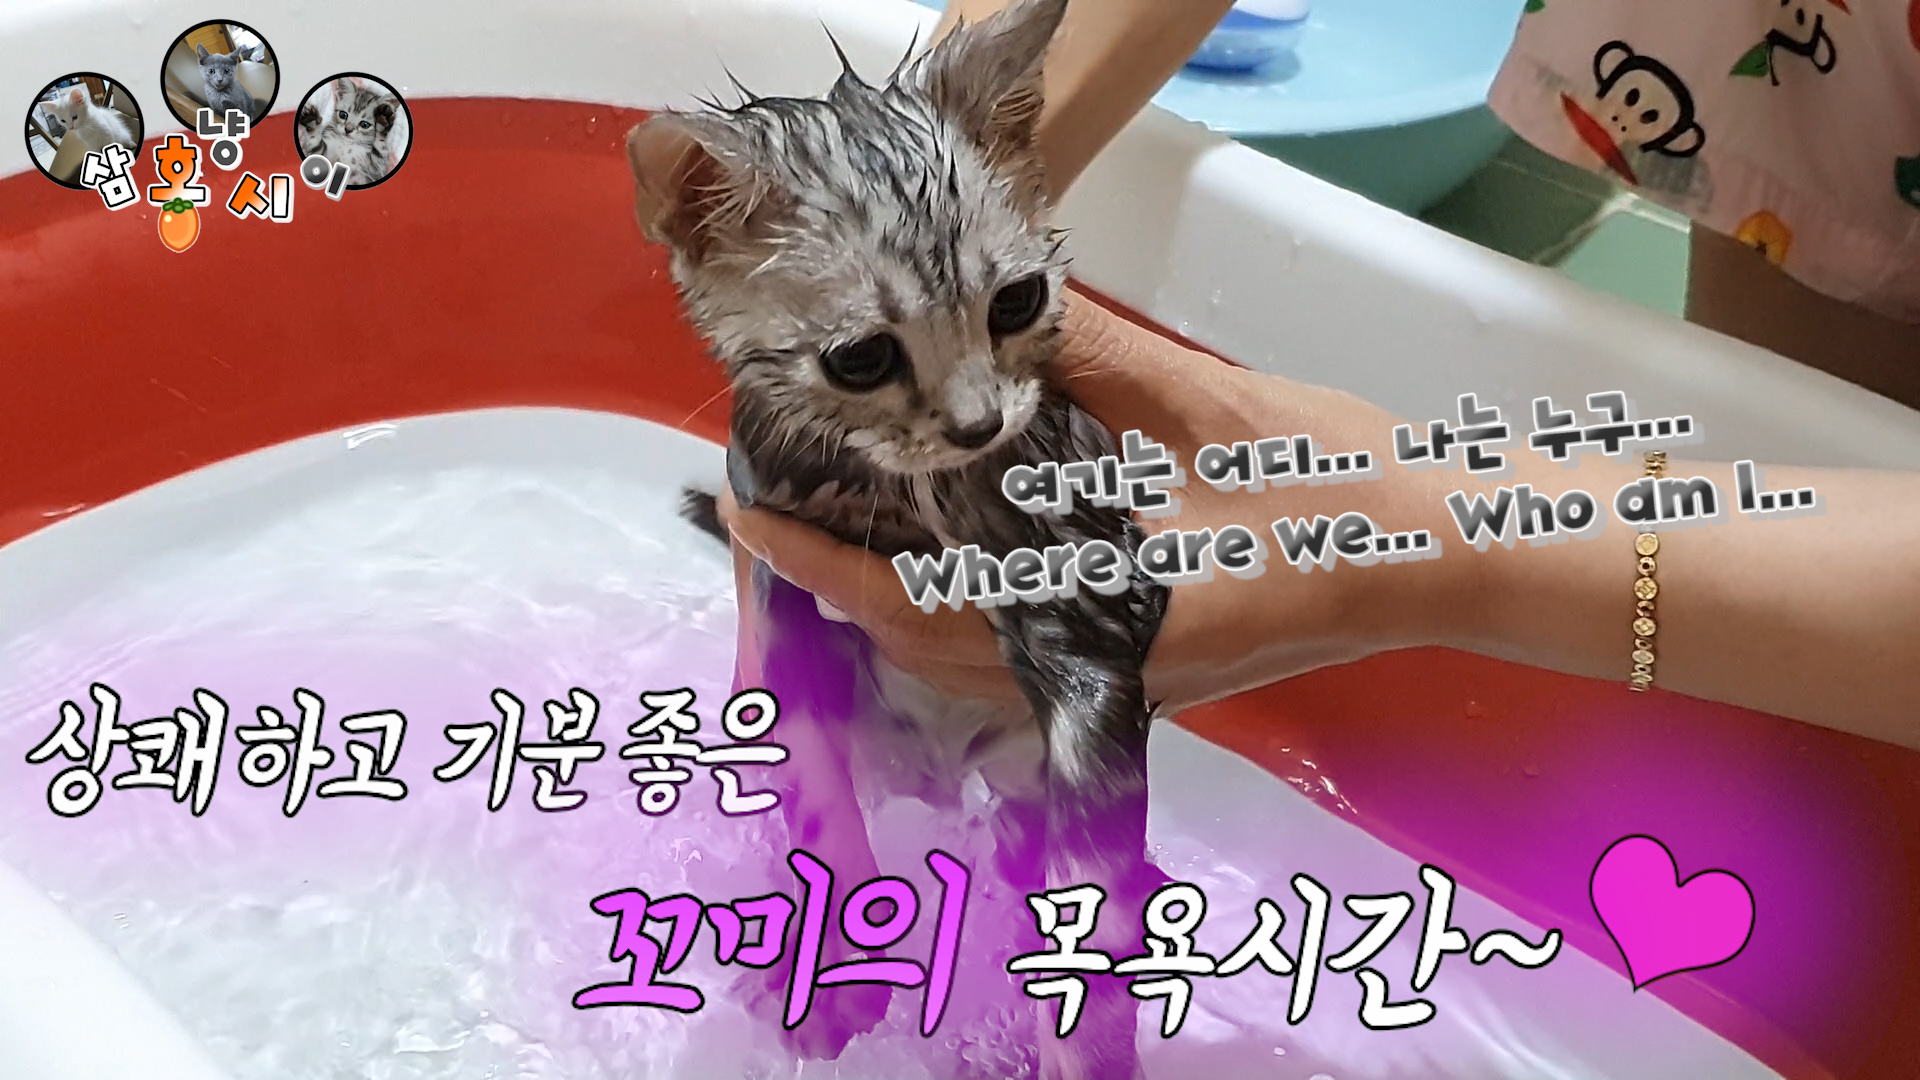 꼬미 목욕 썸네일.jpg : 목욕시키지말라고 땡깡부리는 막내^^